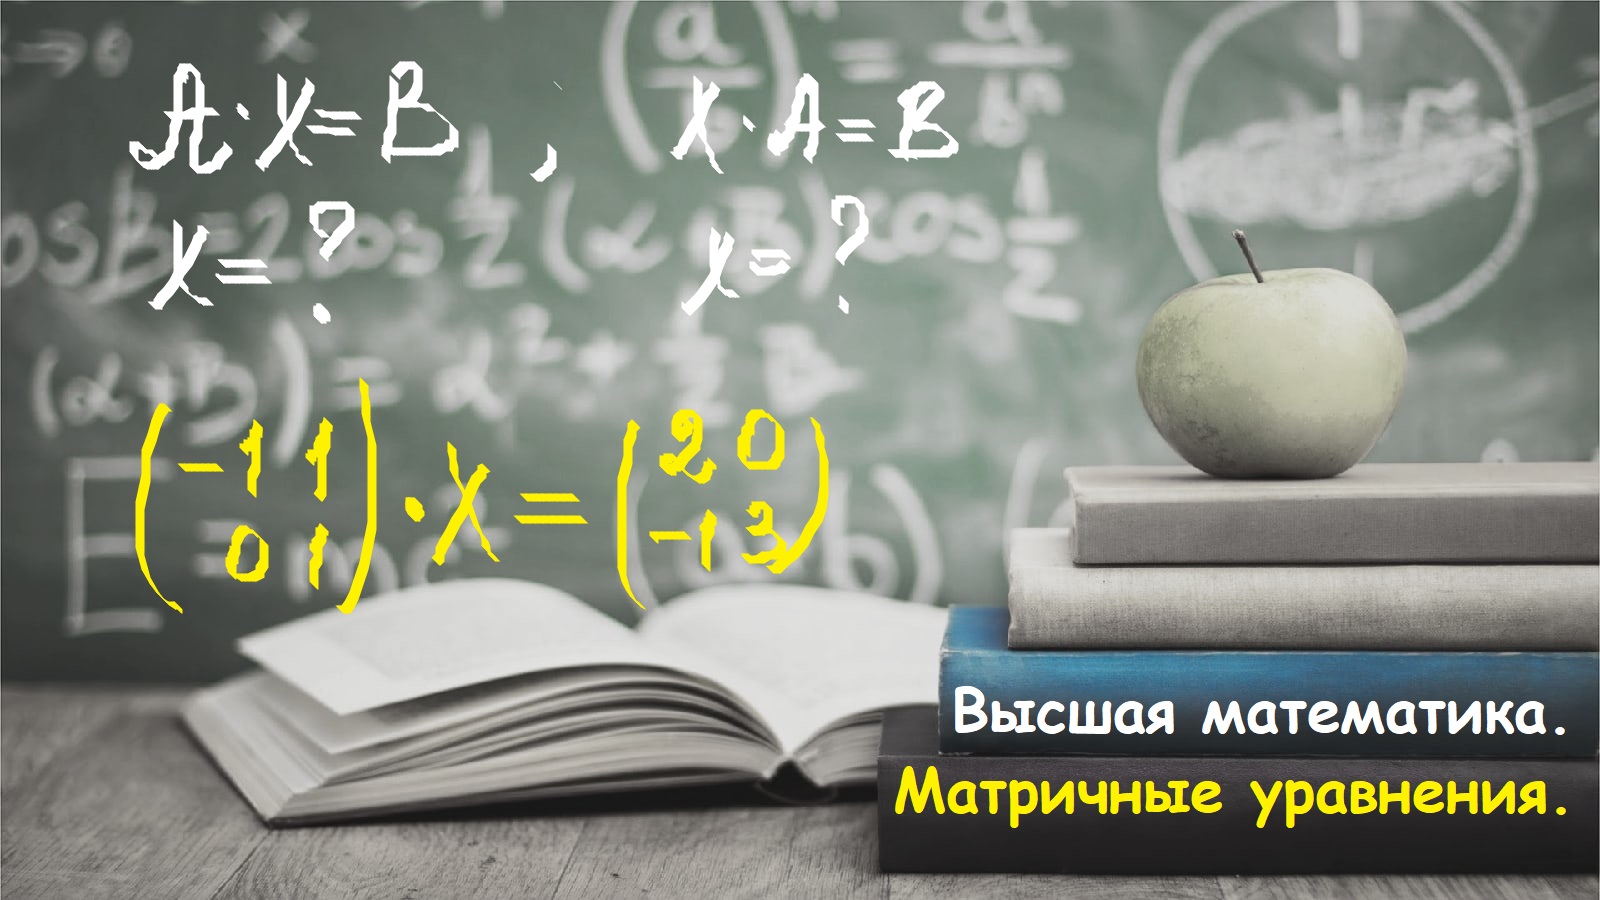 ВЫСШАЯ МАТЕМАТИКА. 1.14. Матричный анализ. Решение матричных уравнений.